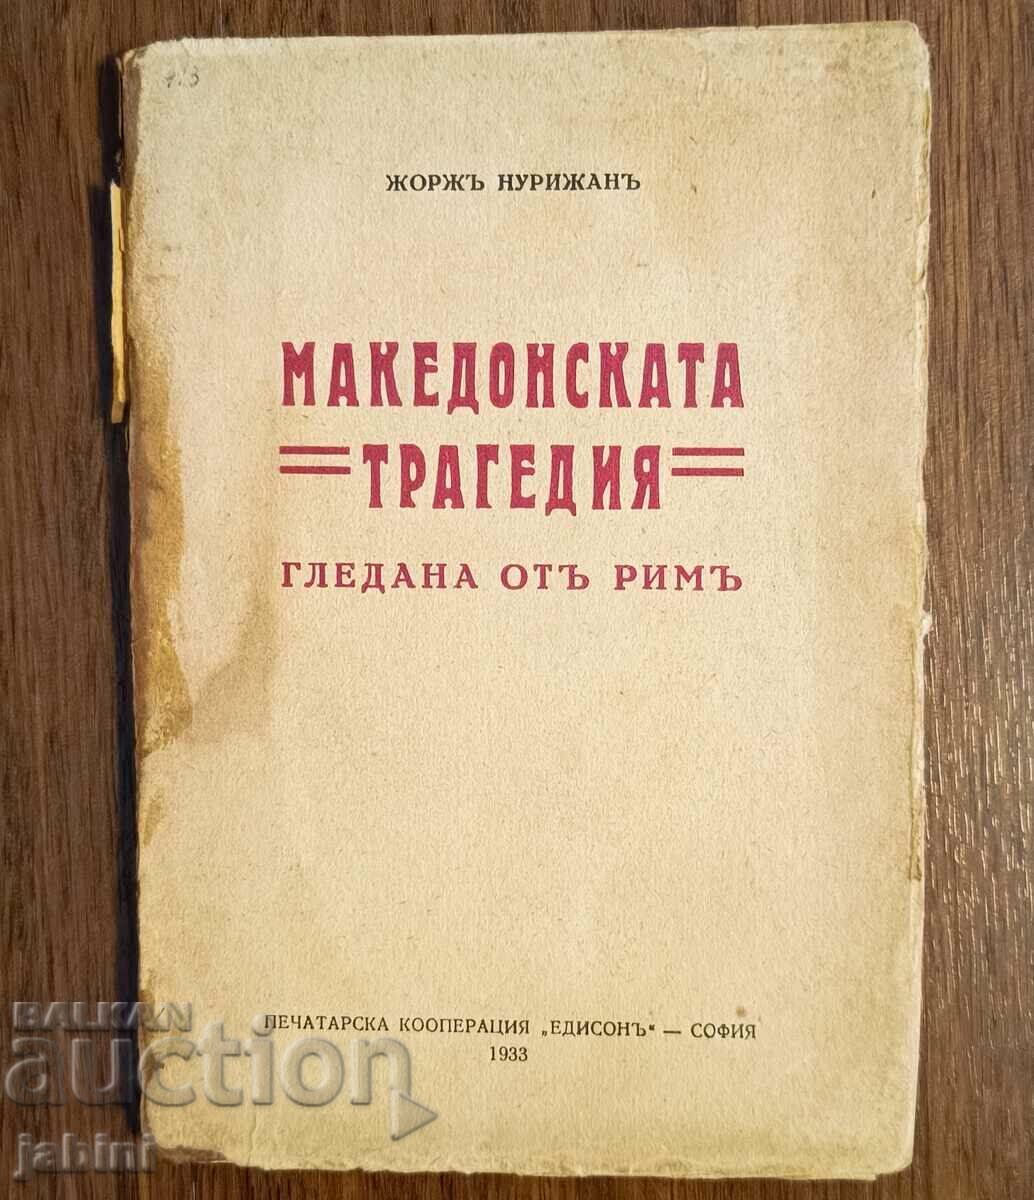 Книга Македонската трагедия от Жорж Нурижан 1933